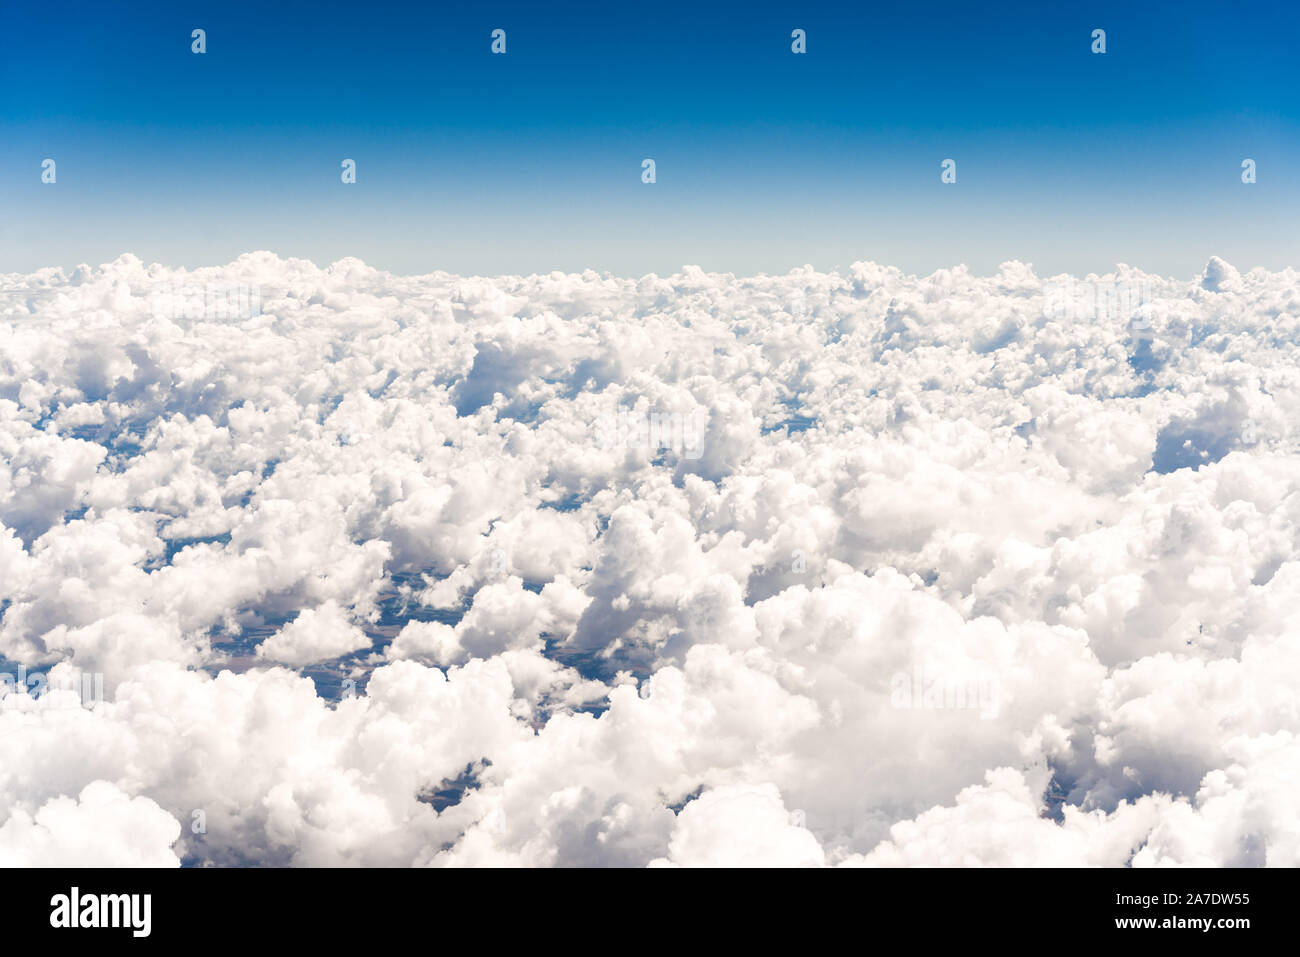 Abstract background skyscape avec cumulus blanc contre le ciel bleu. Banque D'Images